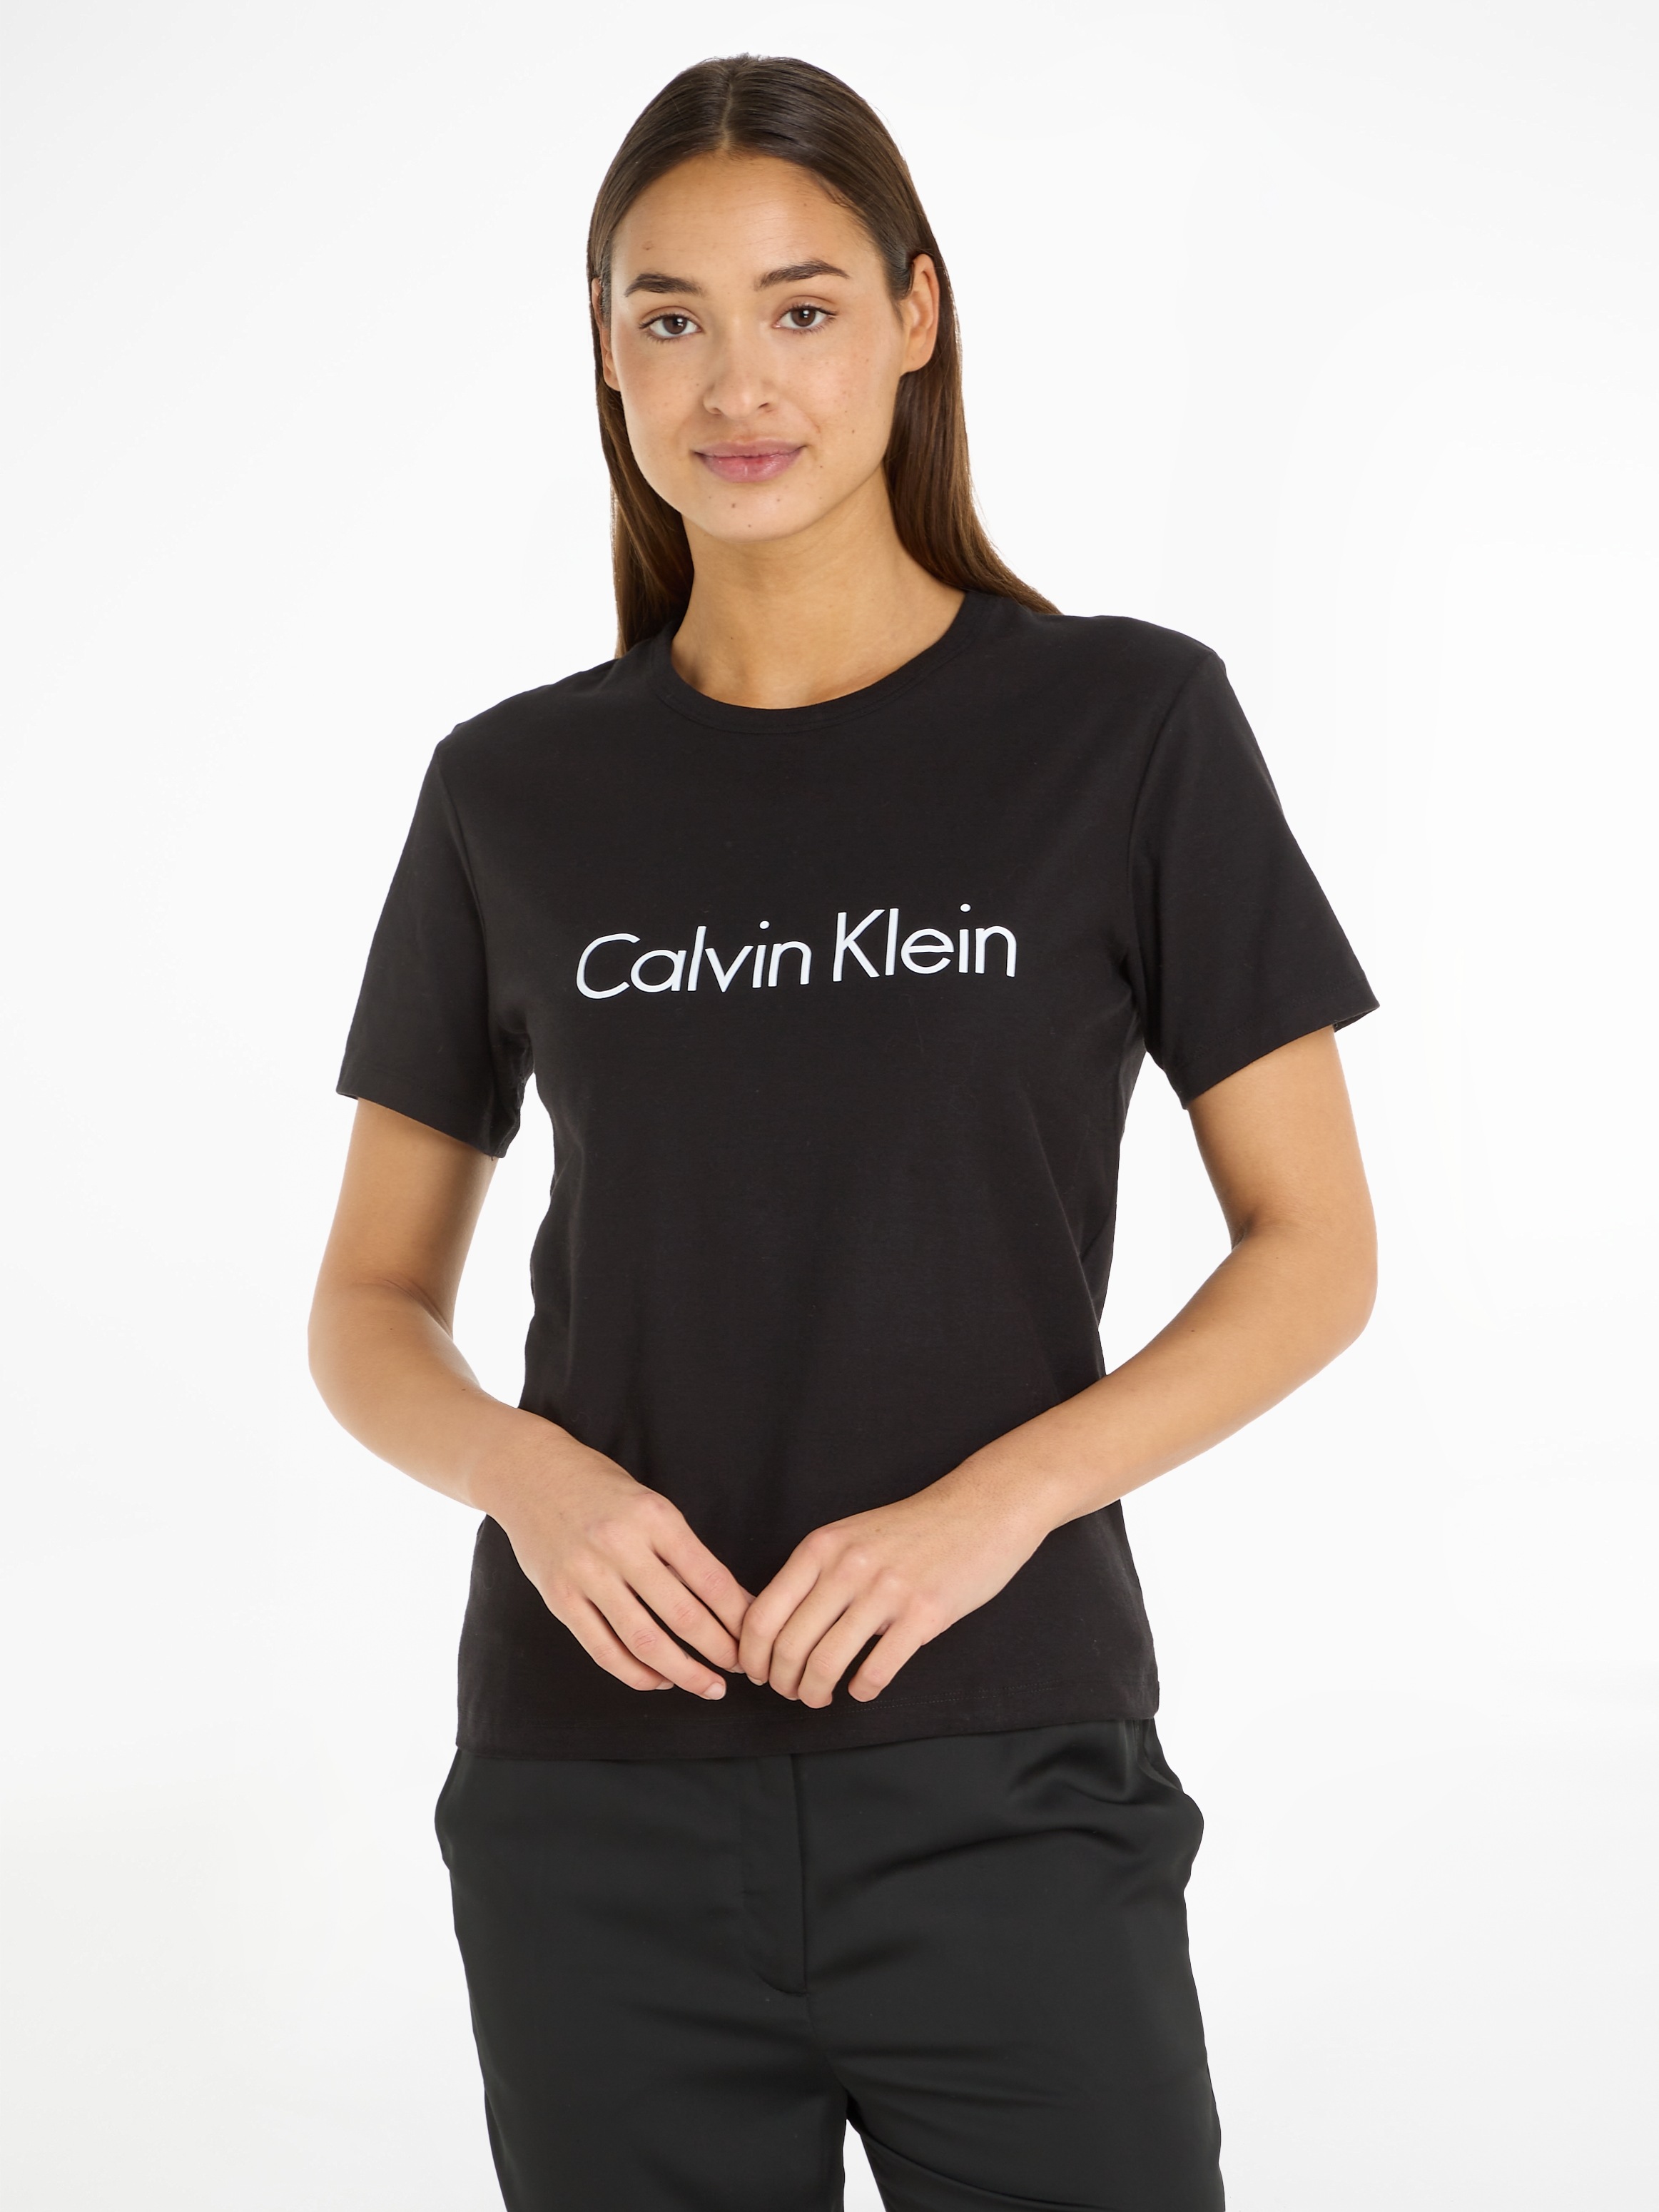 OTTO im Klein großem mit Online Calvin T-Shirt, bestellen Shop Logodruck